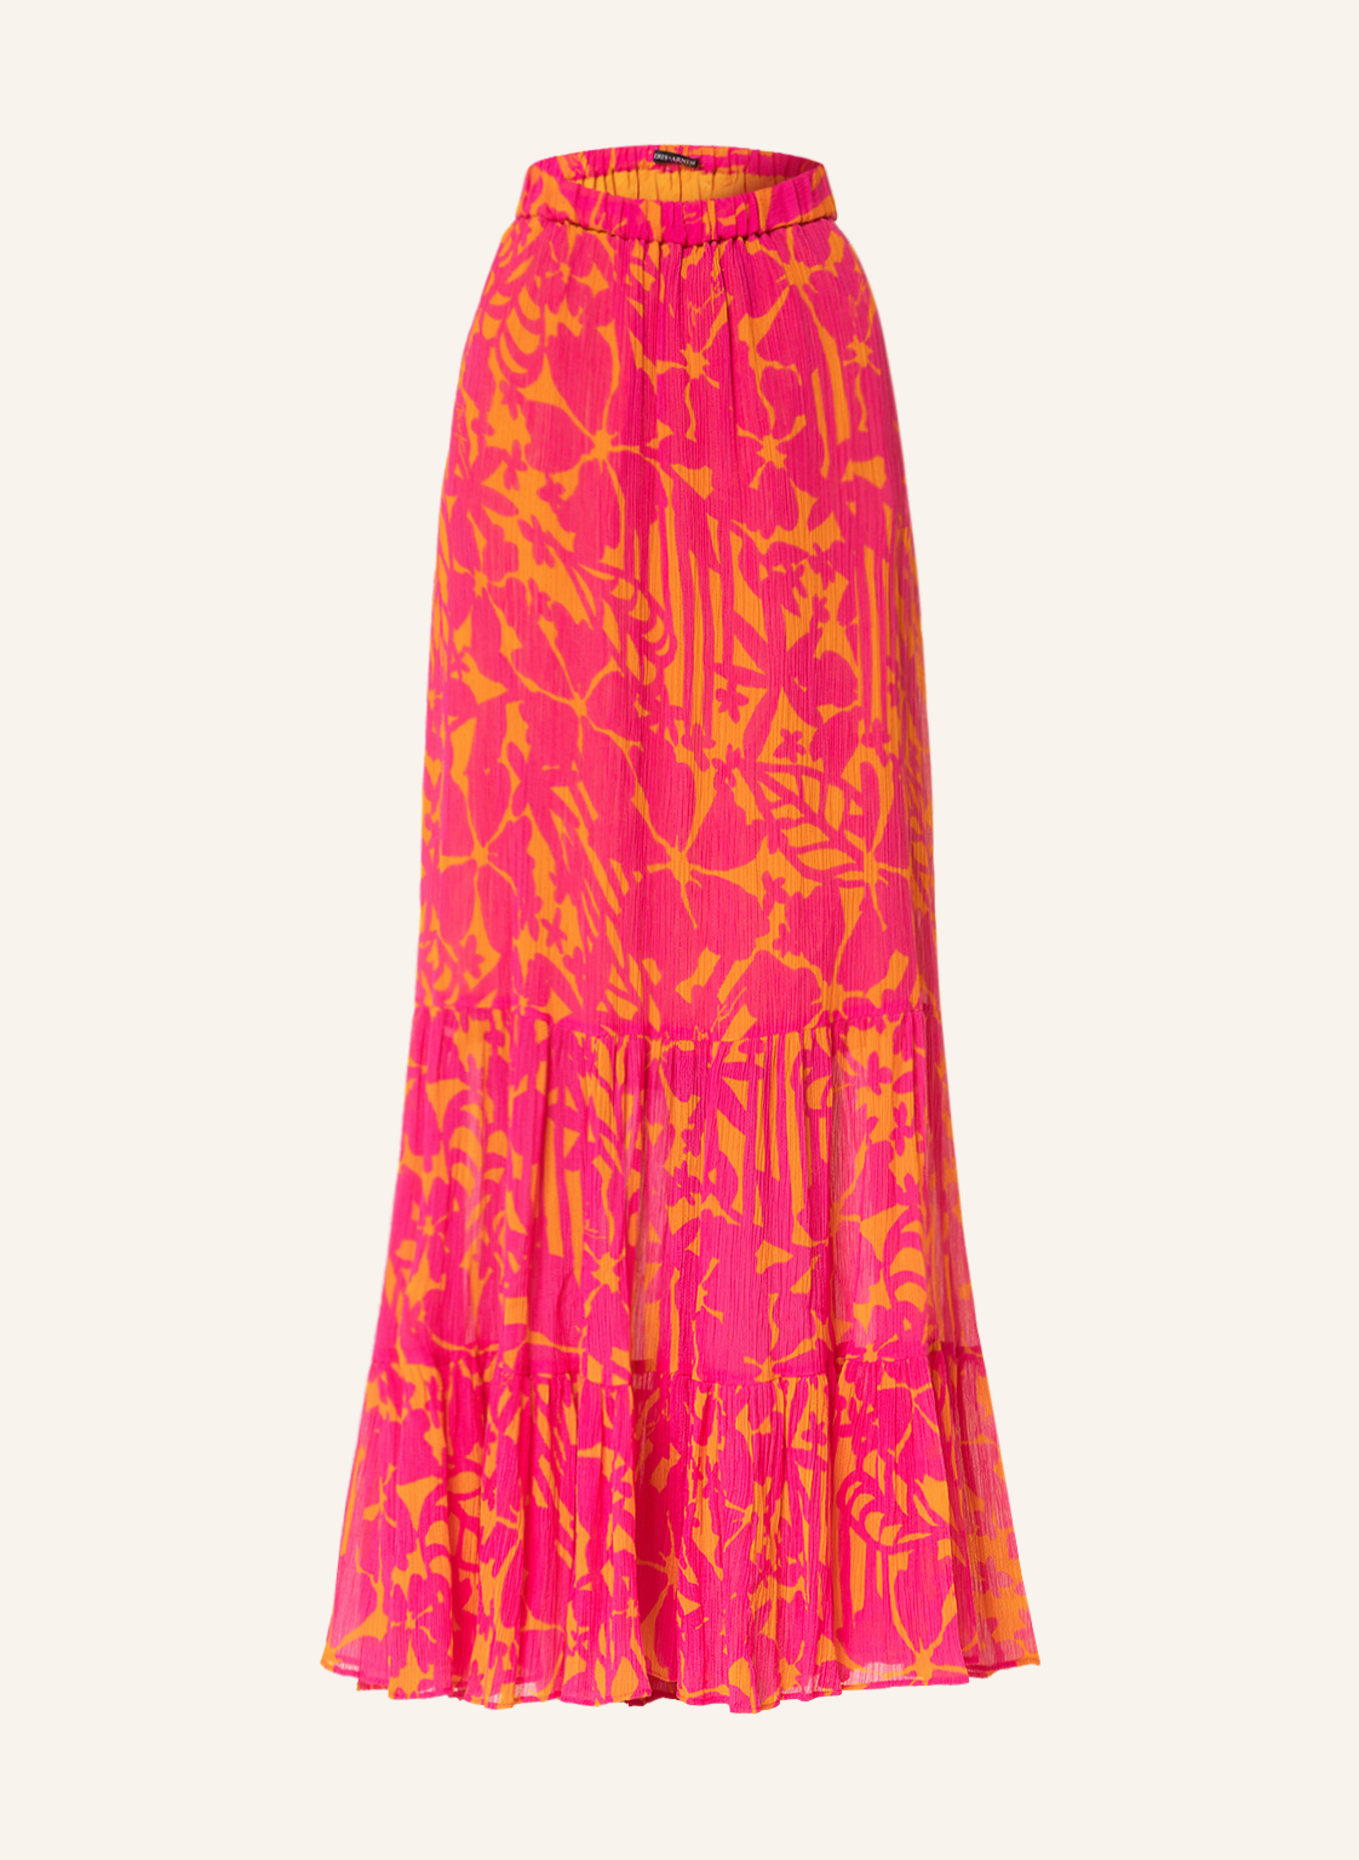 IRIS von ARNIM Skirt, Color: PINK/ ORANGE (Image 1)